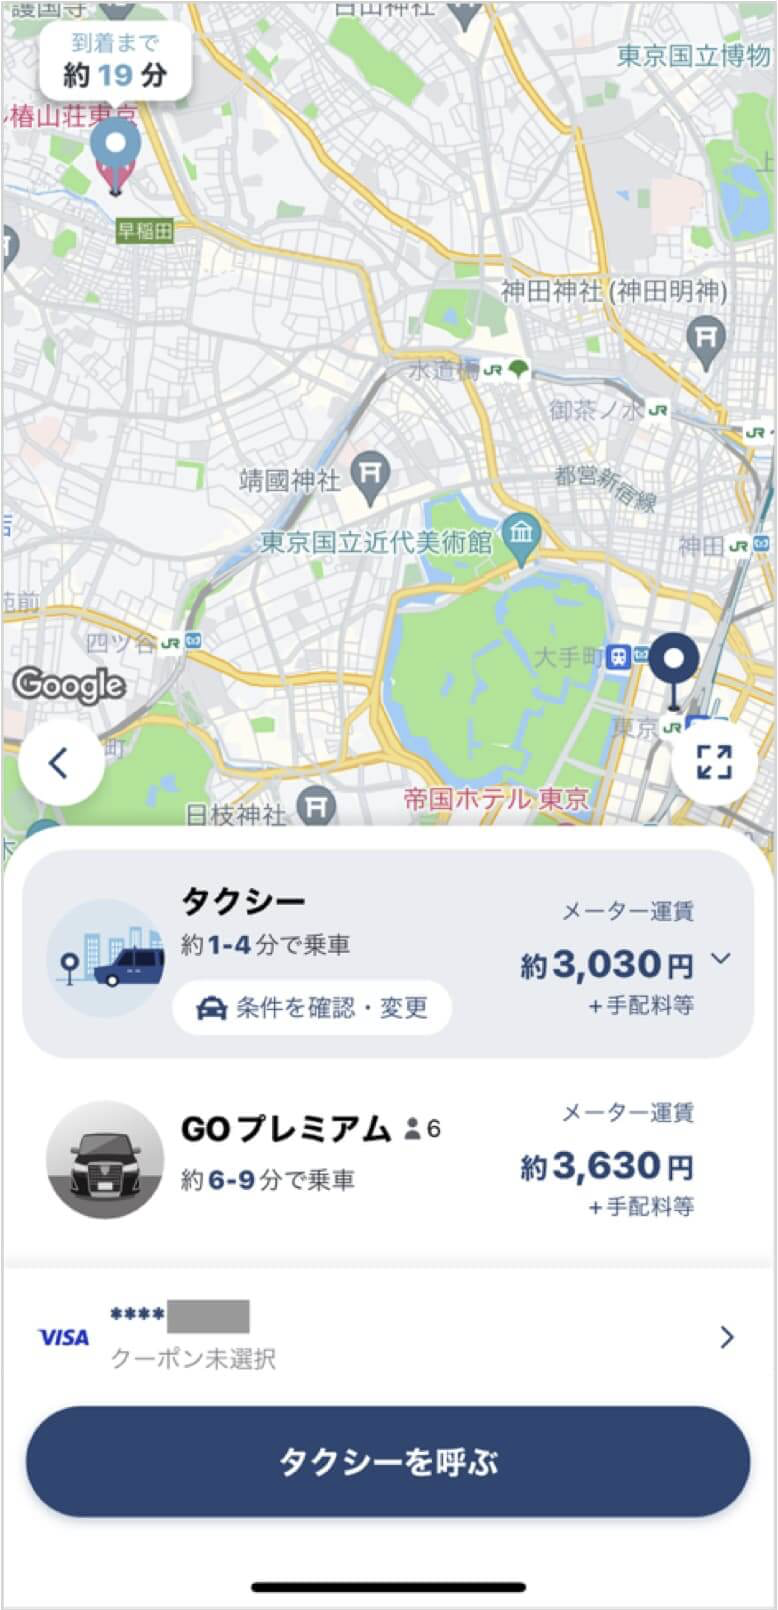 東京駅から椿山荘までのタクシー料金・所要時間まとめ